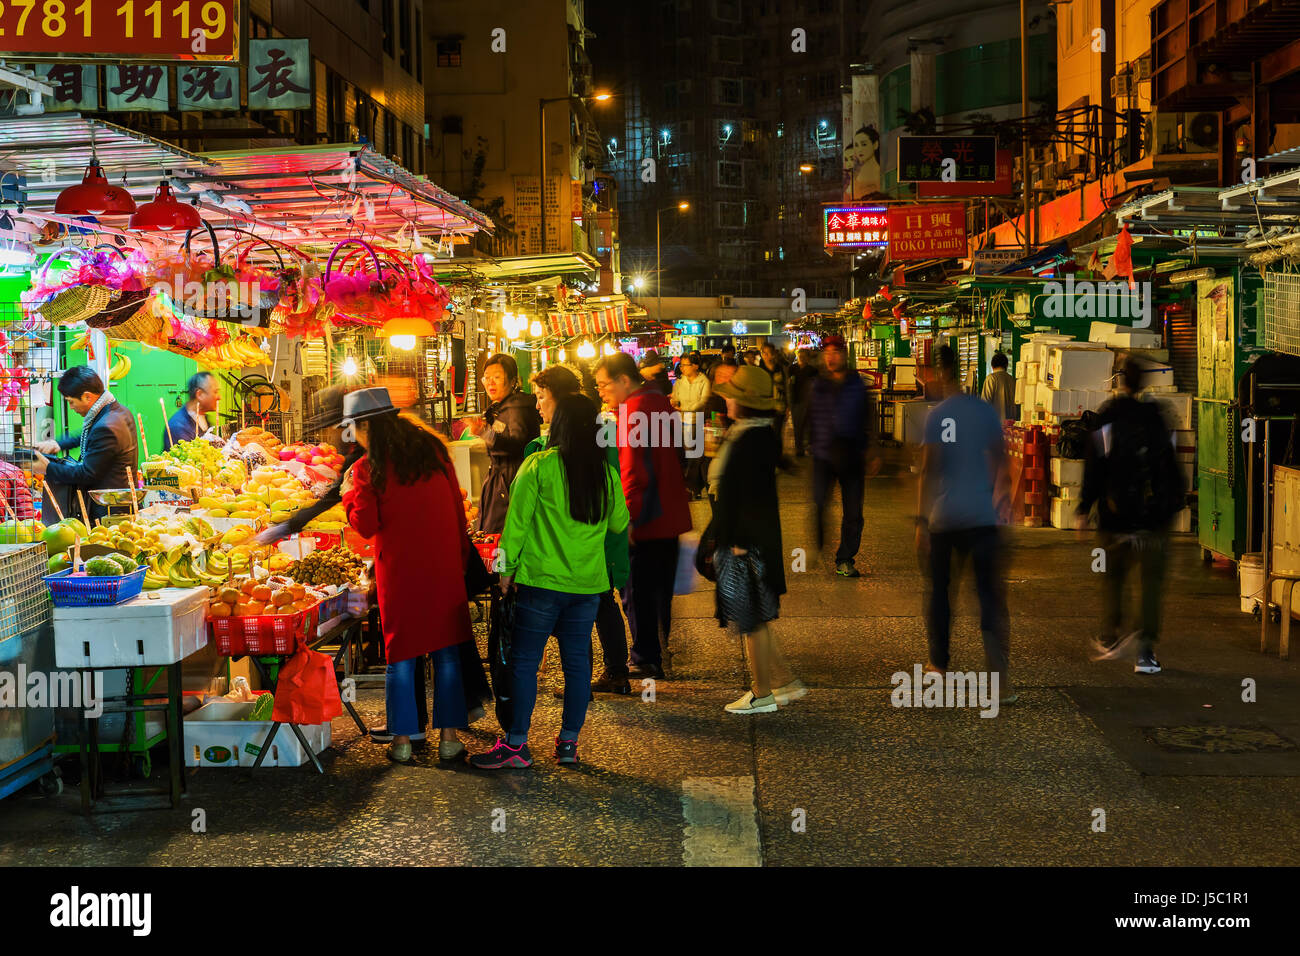 Hong Kong, Hong Kong - March 11, 2017: night market in Kowloon, Hong Kong, with unidentified people at night. Hong Kong ranks as the worlds 4th most d Stock Photo